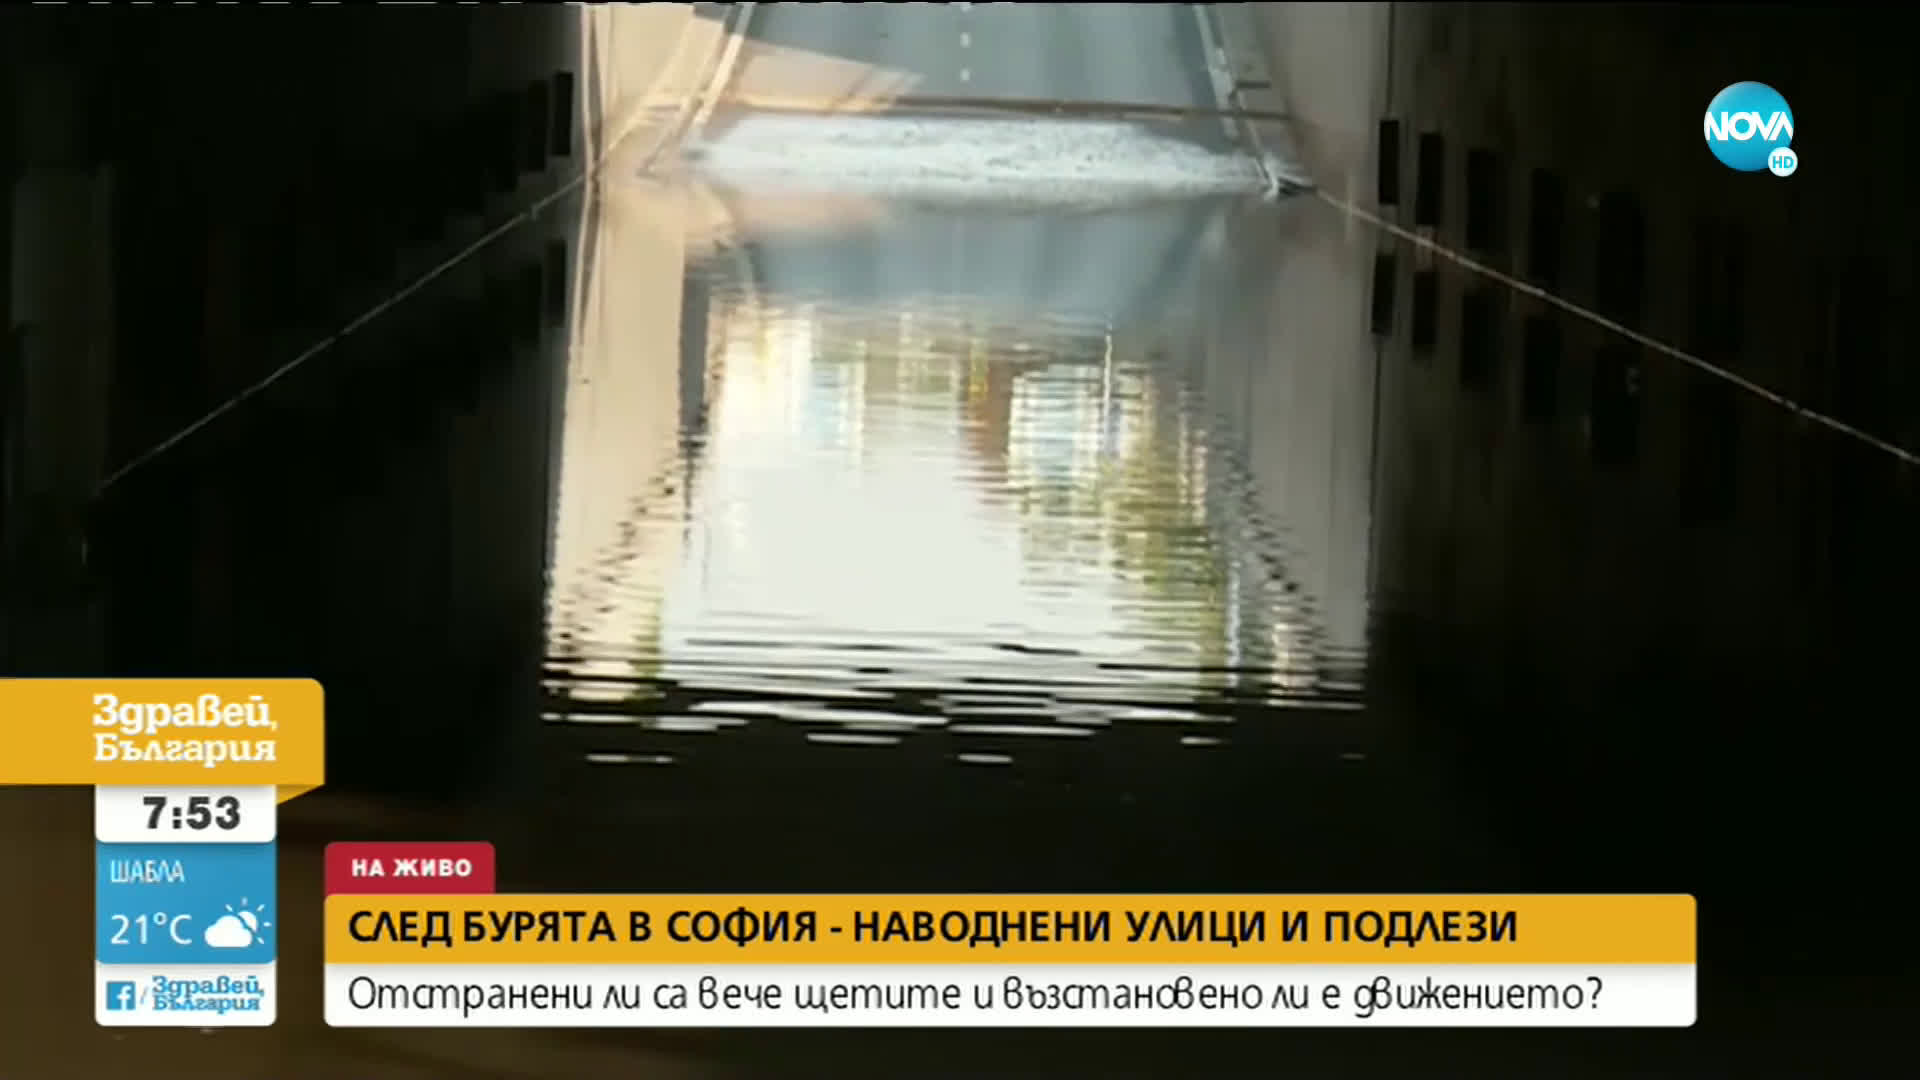 Наводнени улици и подлези след бурята в София